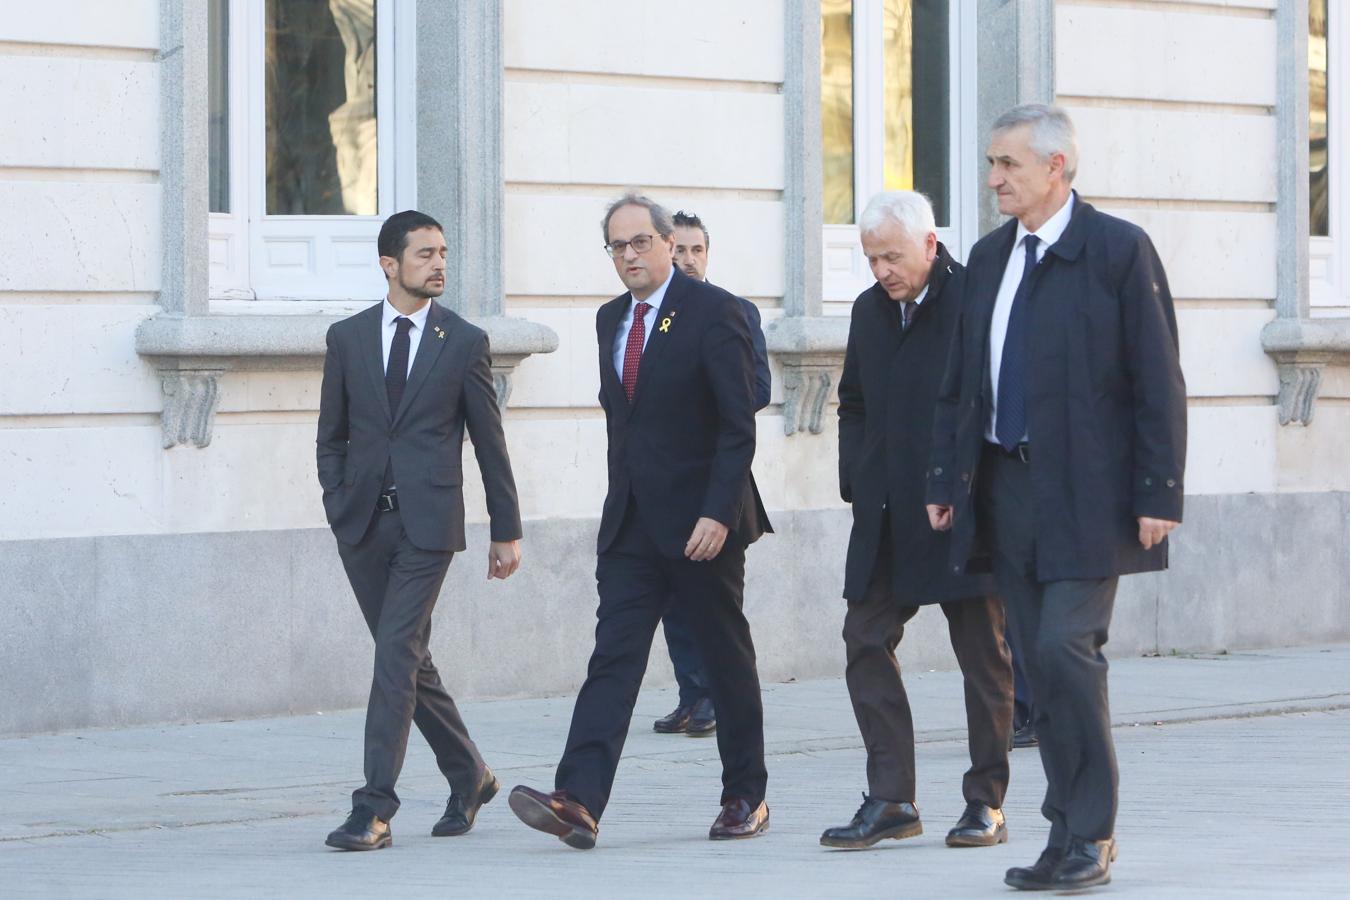 El presidente de la Generalitat, Quim Torra (centro de la imagen con corbata granate), acude al Tribunal Supremo antes del inicio del juicio del «procés» contra los políticos independentistas catalanes.. 